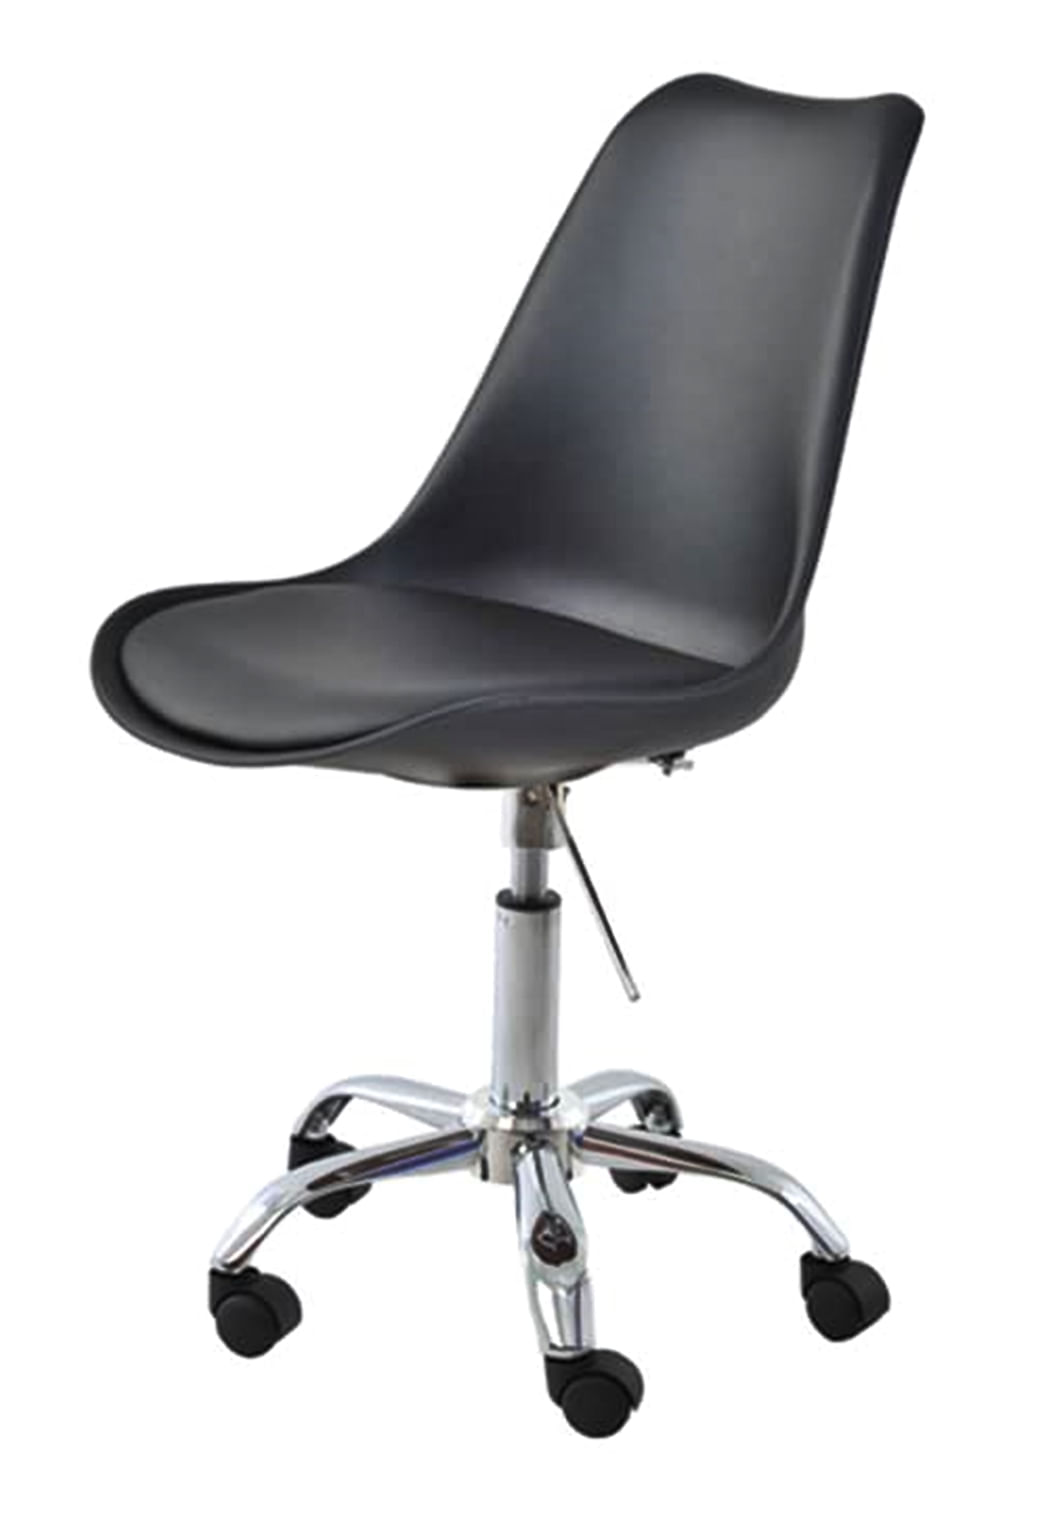 Cadeira Saarinen Assento em Polipropileno cor Preto com Base Cromada - 45065